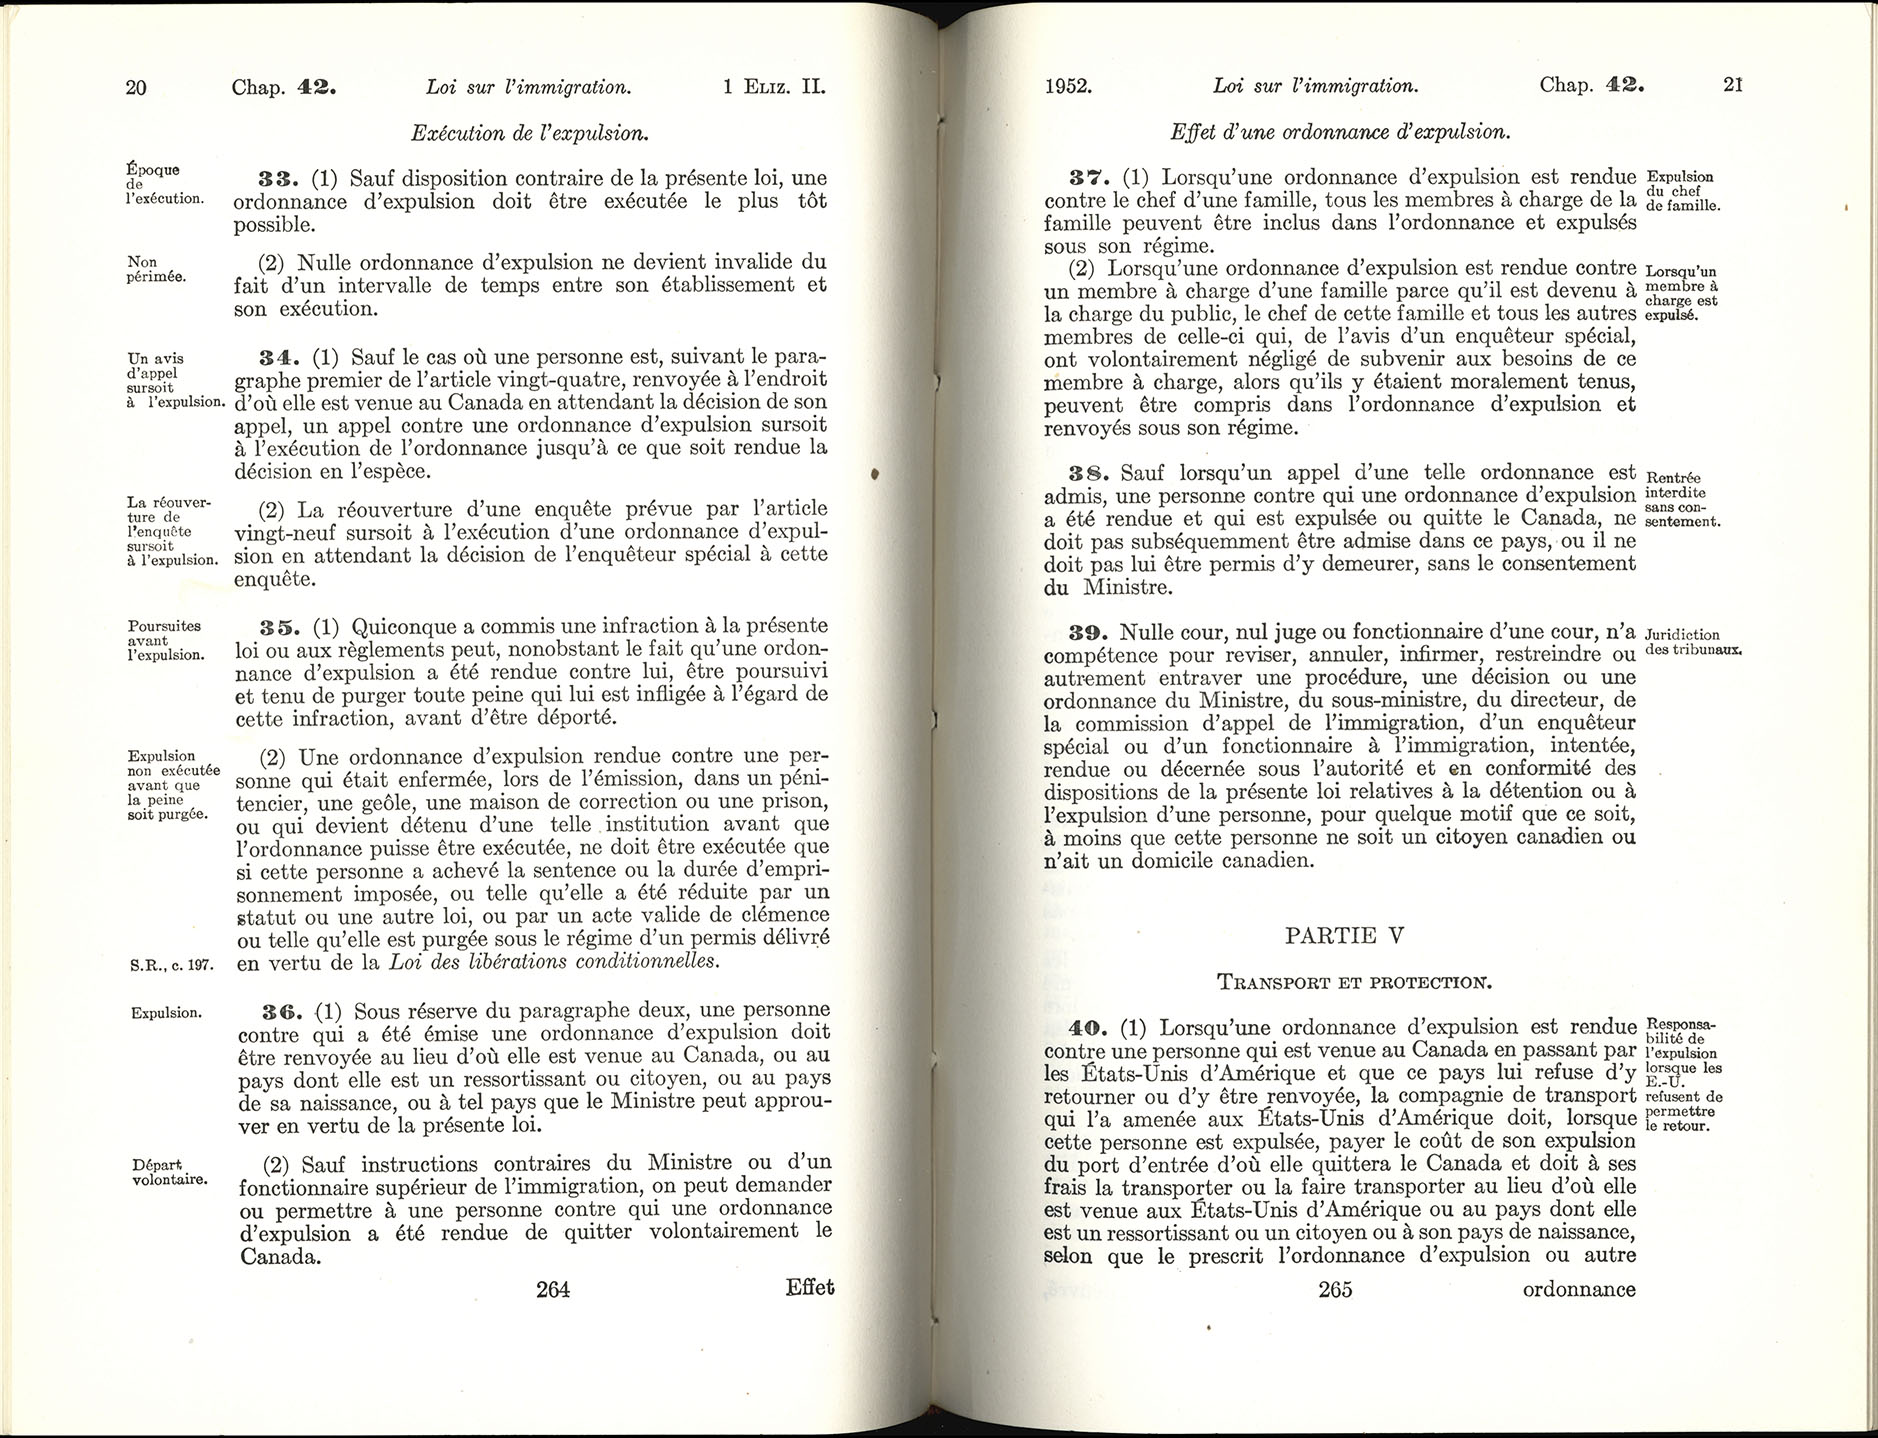 Chap 42 Page 264, 265 Loi sur l’immigration, 1952